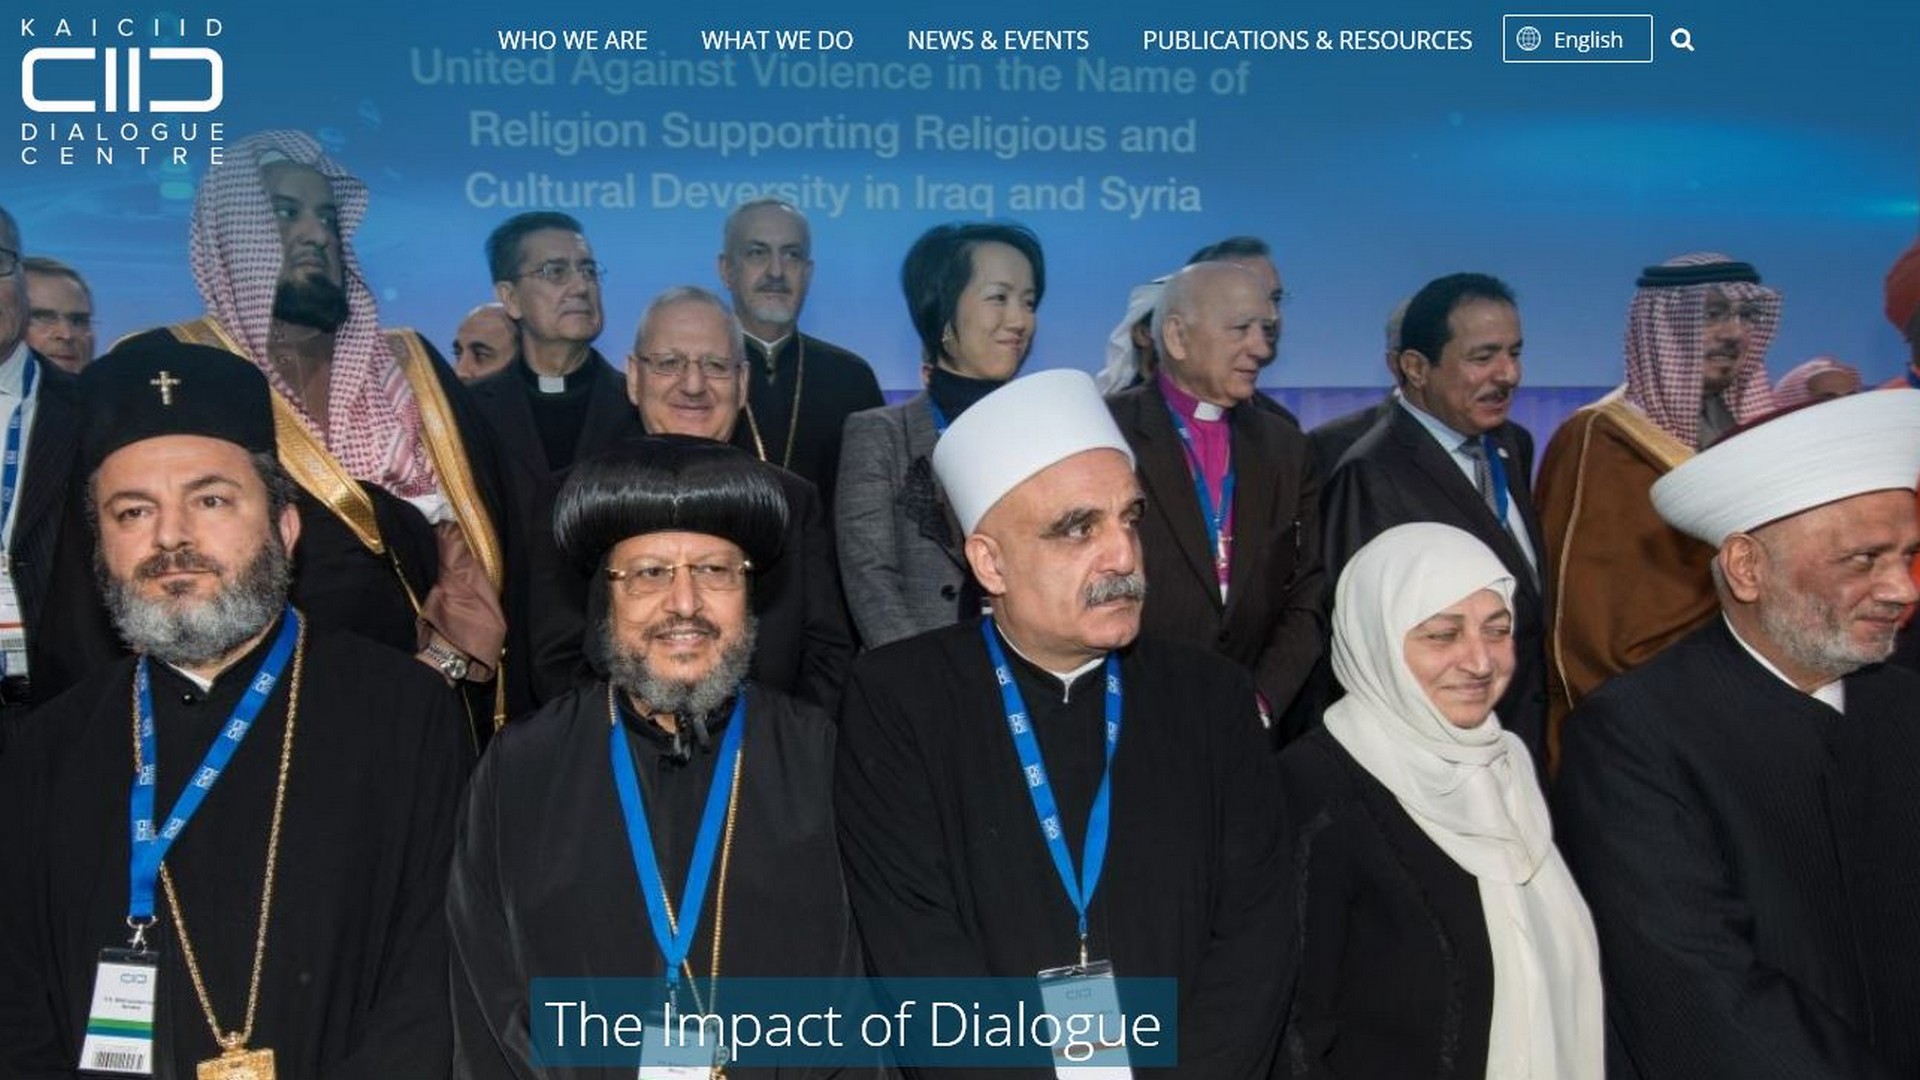 Le 'Centre international roi Abdallah Ben Abdelaziz pour le dialogue interreligieux et interculturel' (KAICIID) a son siège à Vienne | © www.kaiciid.org 